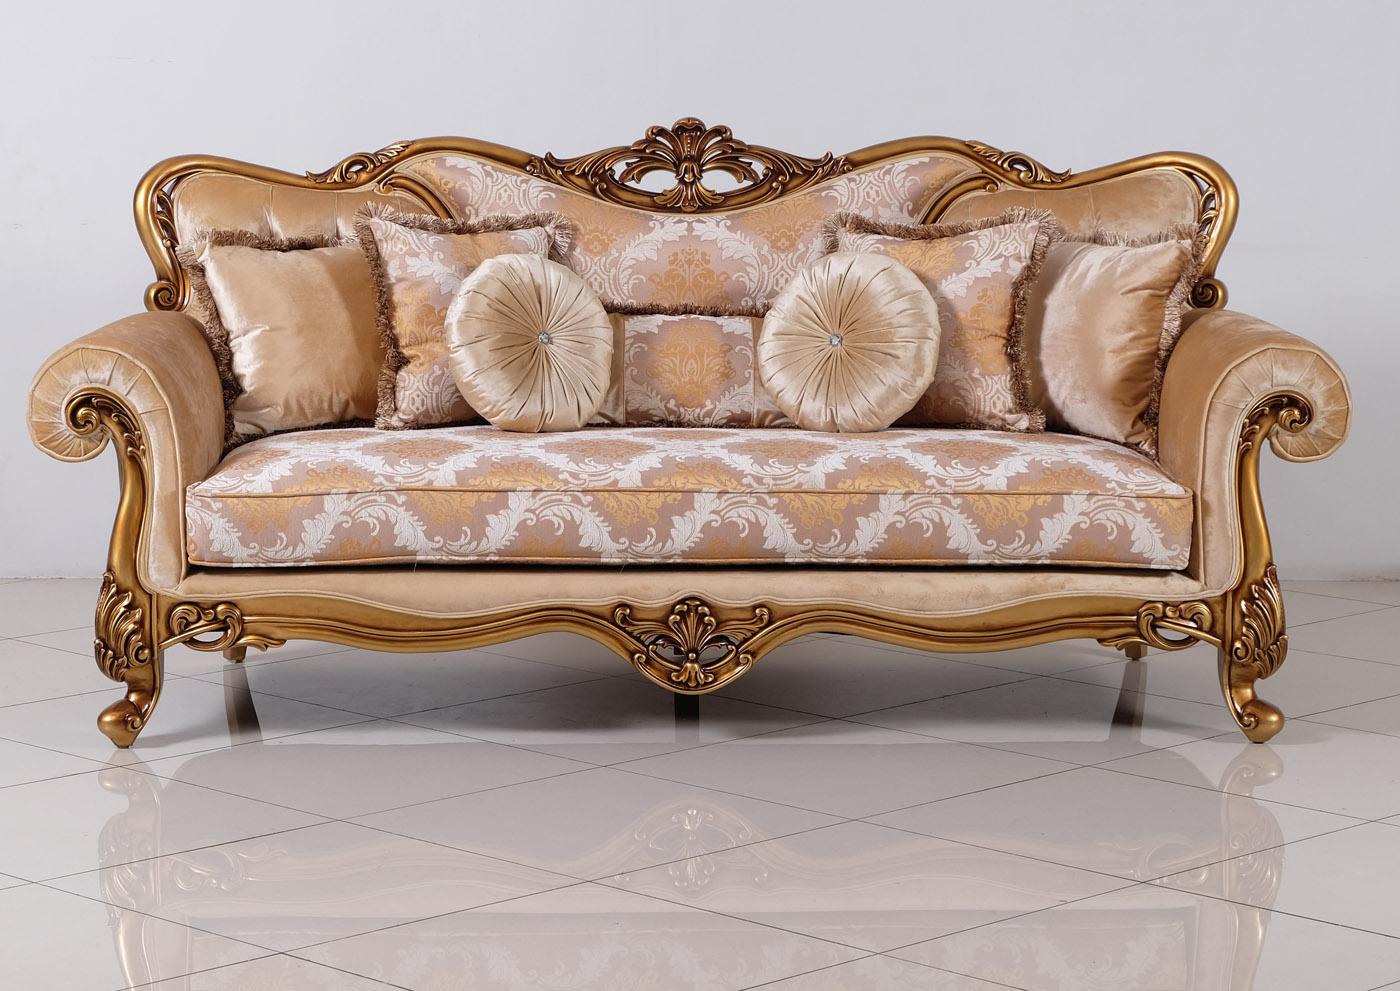 

    
Luxury Golden Bronze Wood Trim CLEOPATRA Sofa Set 3Pcs EUROPEAN FURNITURE Classic
